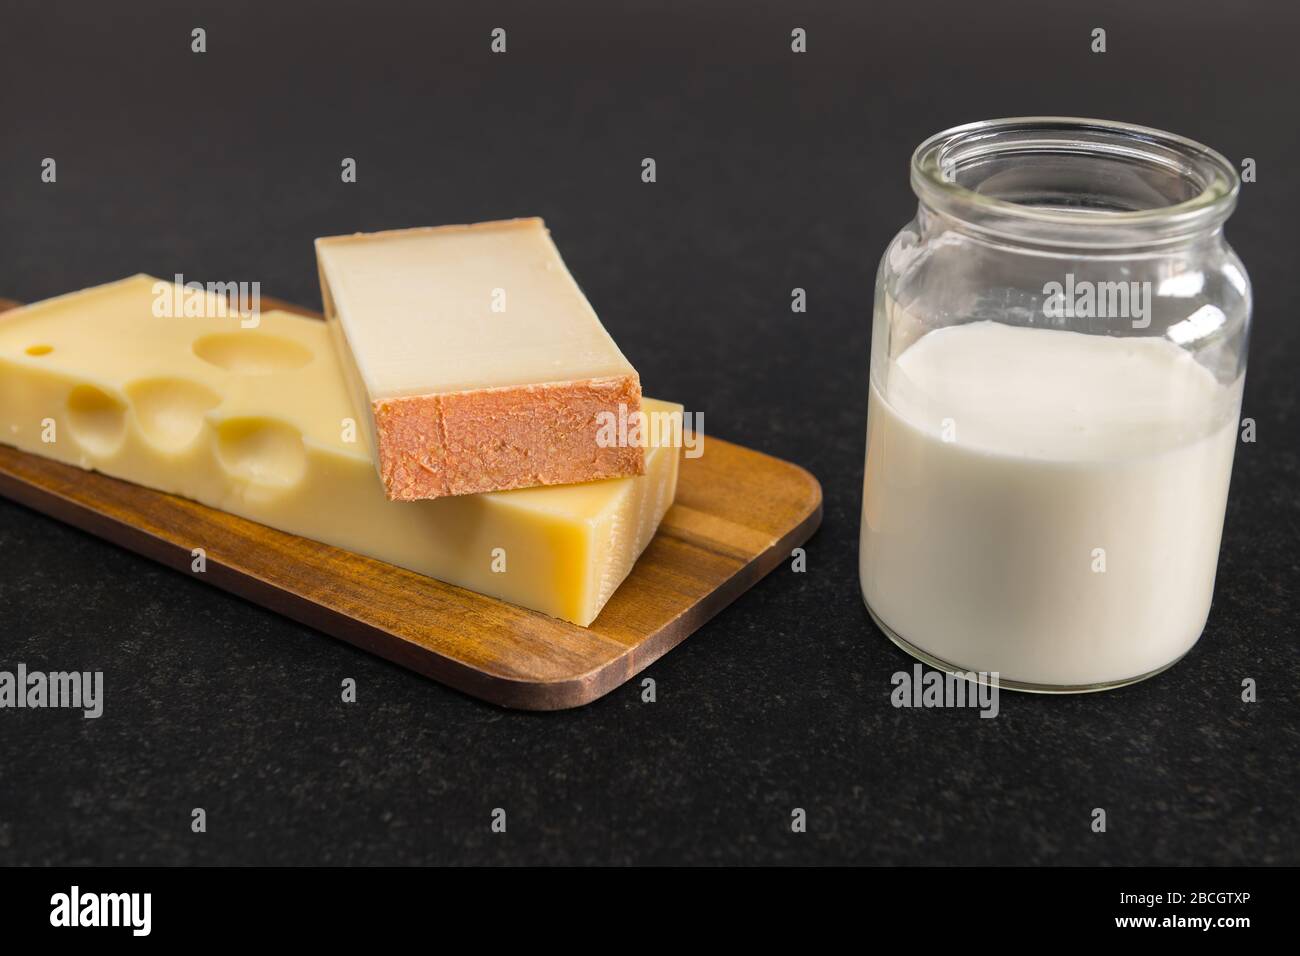 Fromage Emmental et fromage Gruyere sur un support en bois à côté d'un verre rempli de lait sur une table noire. Banque D'Images